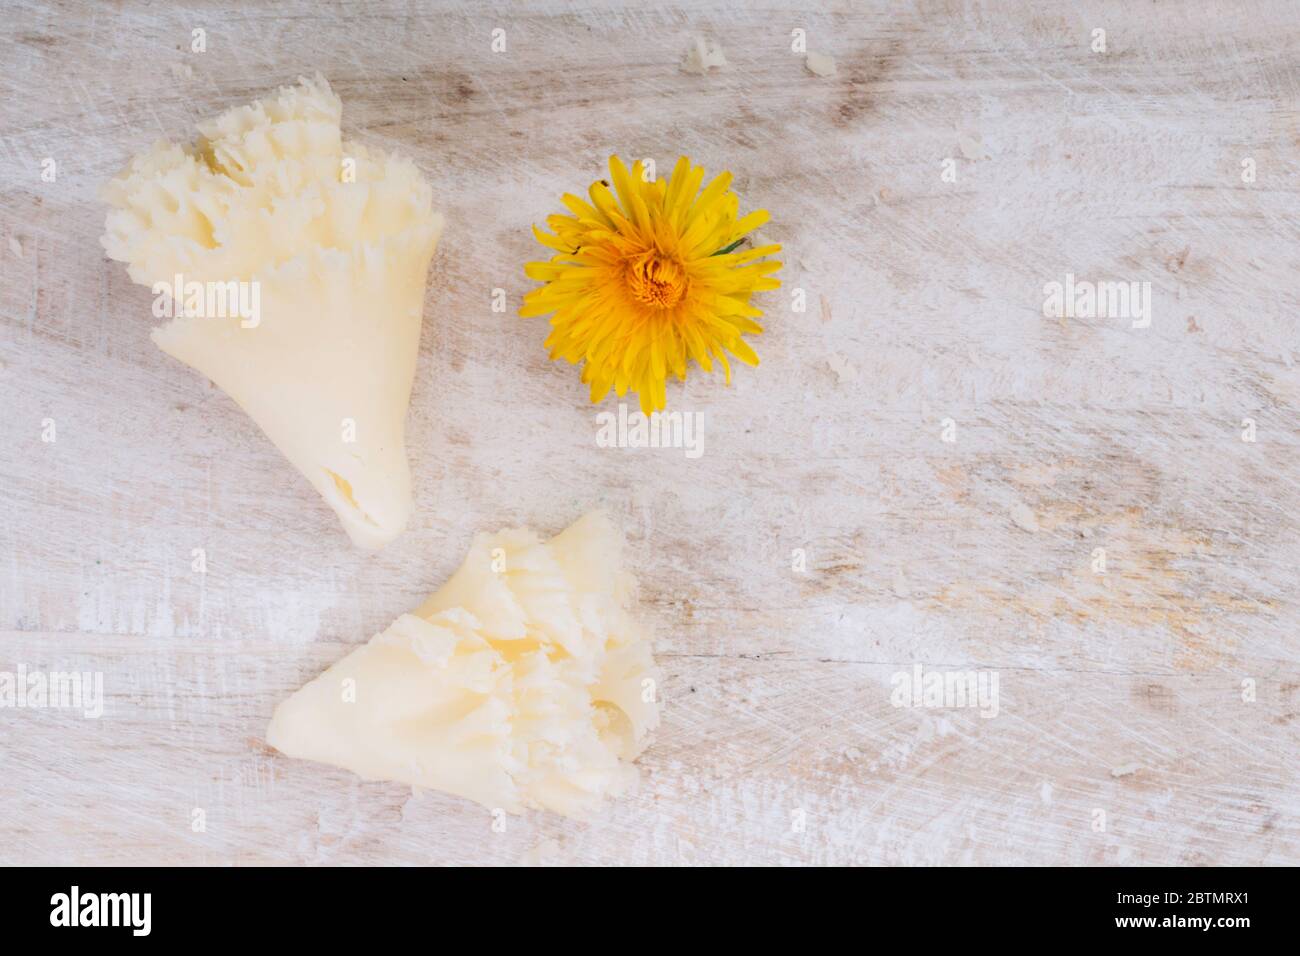 Shaving Tete De Moine Cheese Using Girolle Knife. Monks Head Stock Image -  Image of mold, girolle: 216584533